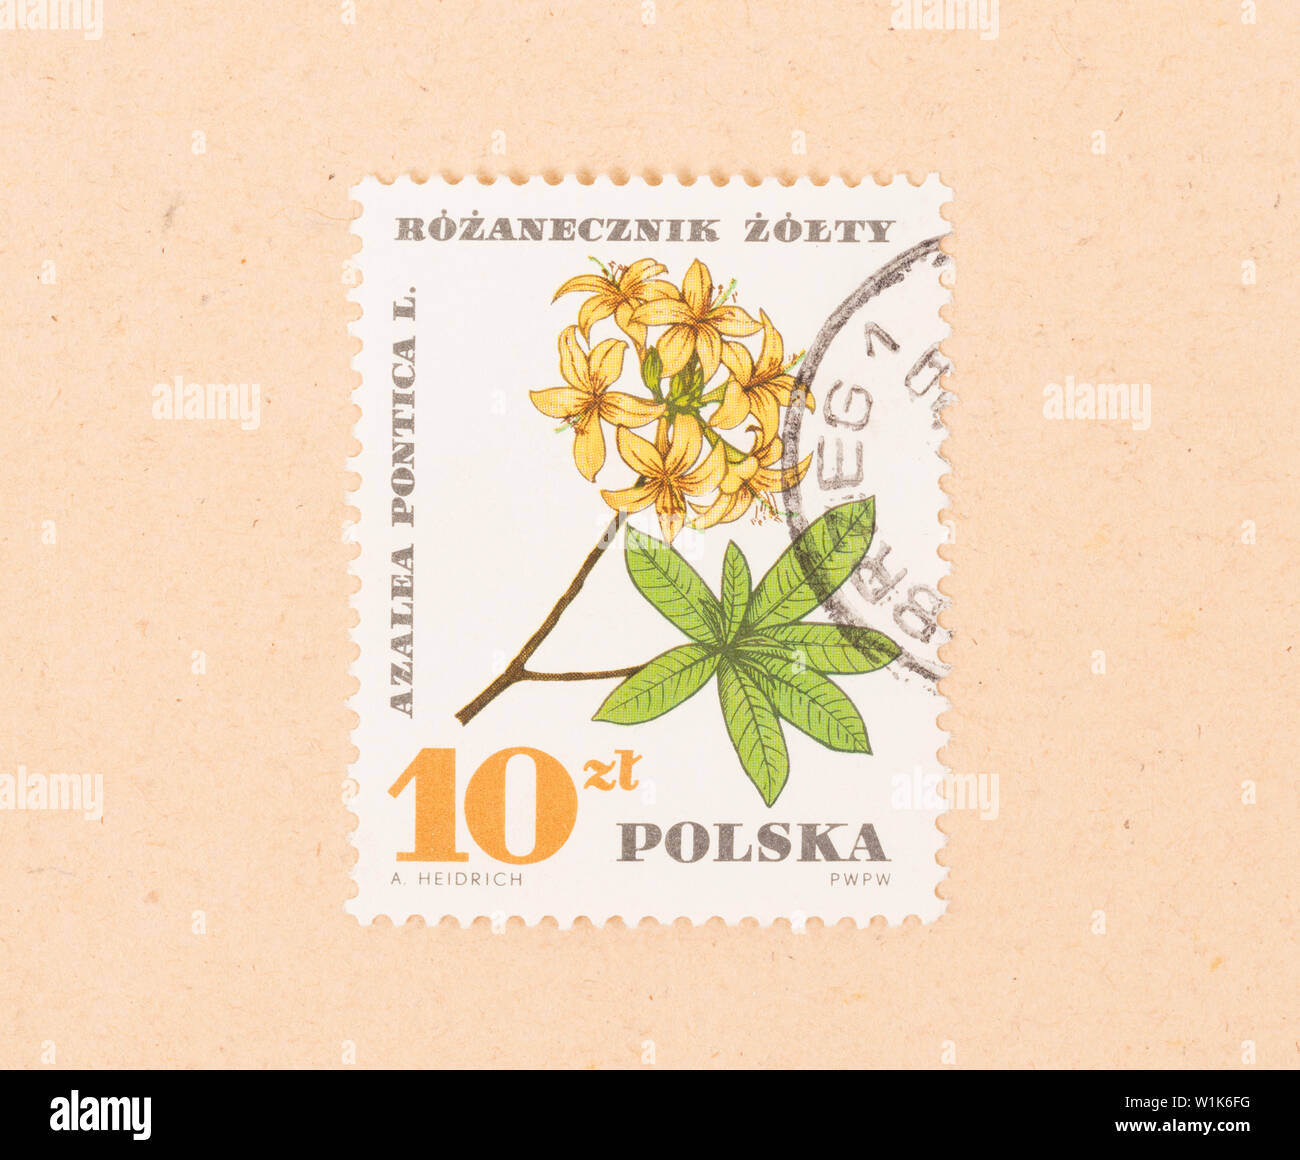 POLAND - CIRCA 1970: A stamp printed in Poland shows a flower, circa 1970 Stock Photo